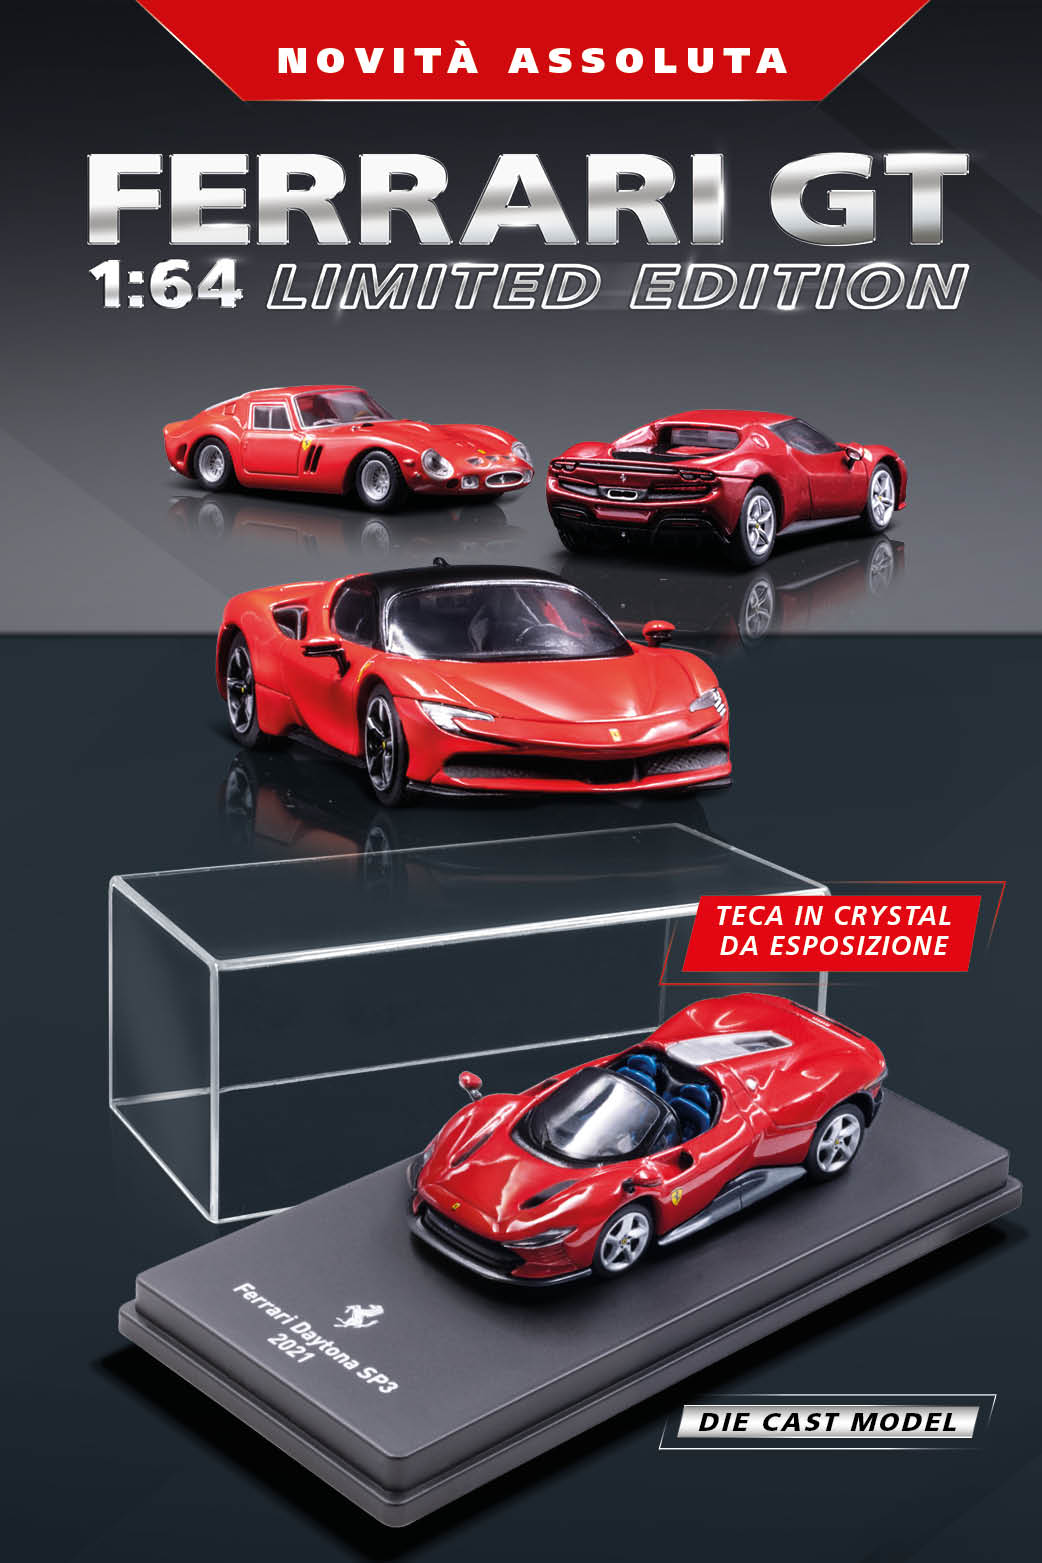 Ferrari Gran Turismo 1:64 gadget 031